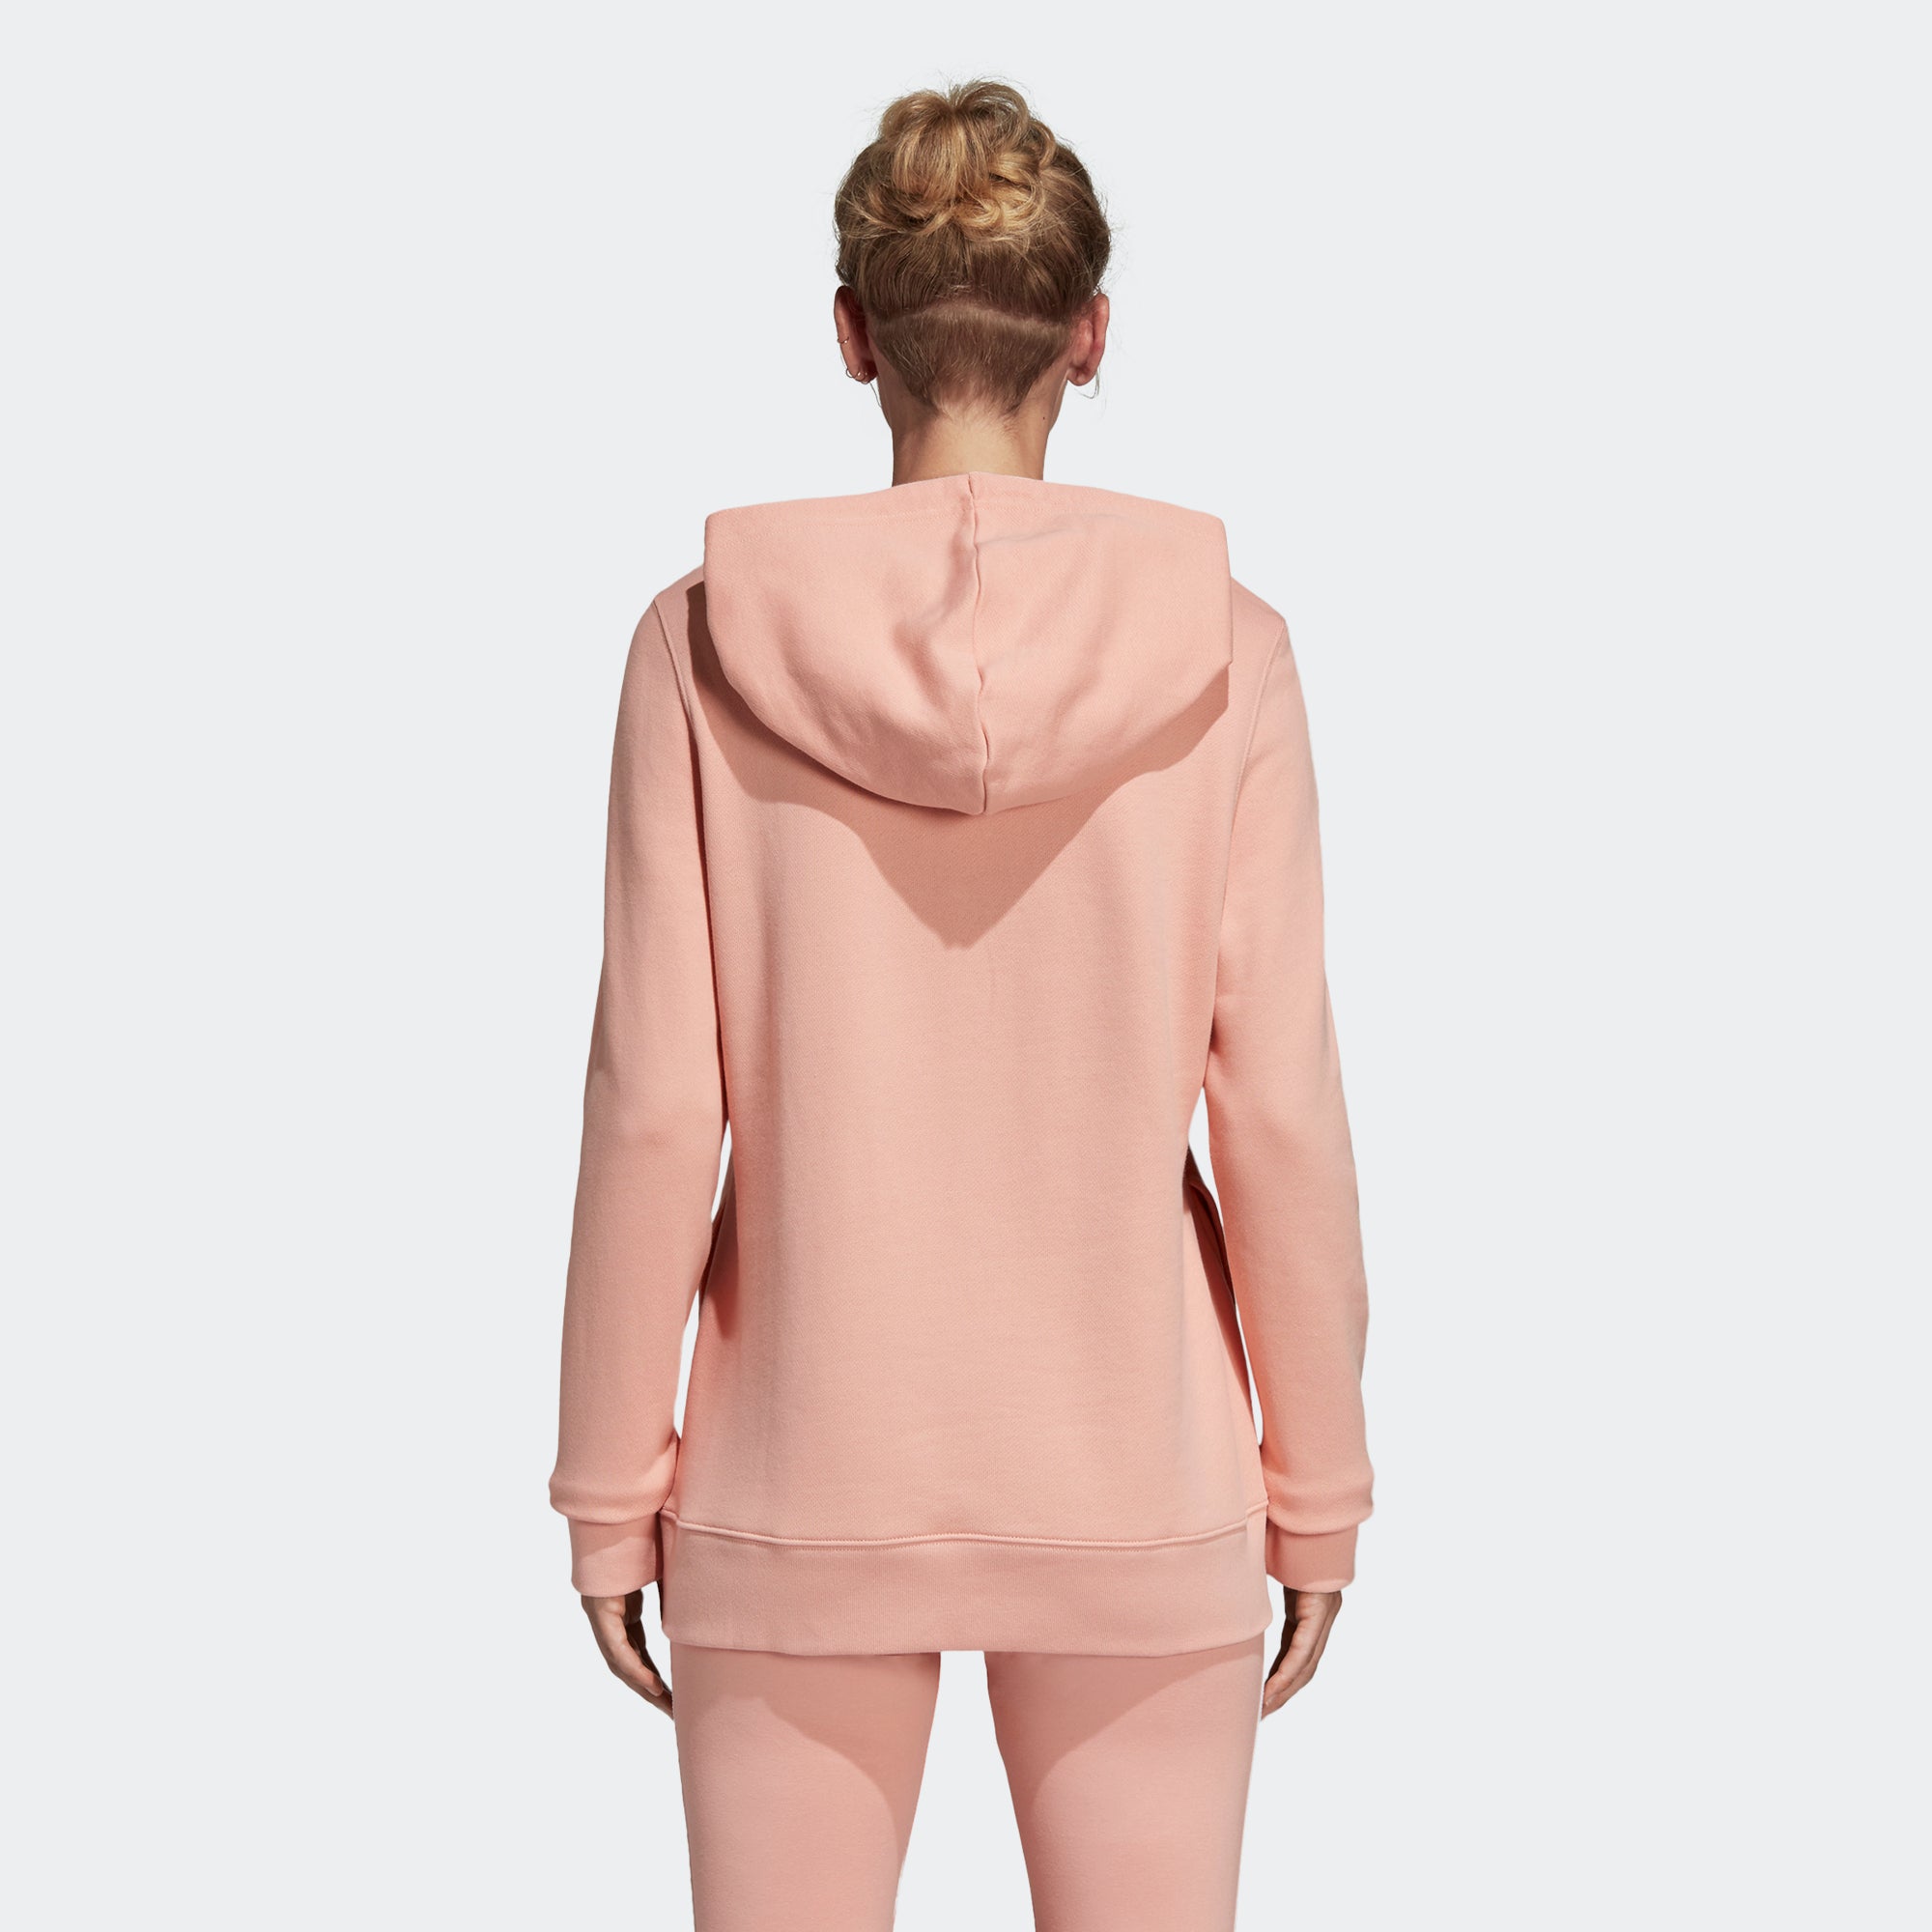 adidas trefoil hoodie dust pink